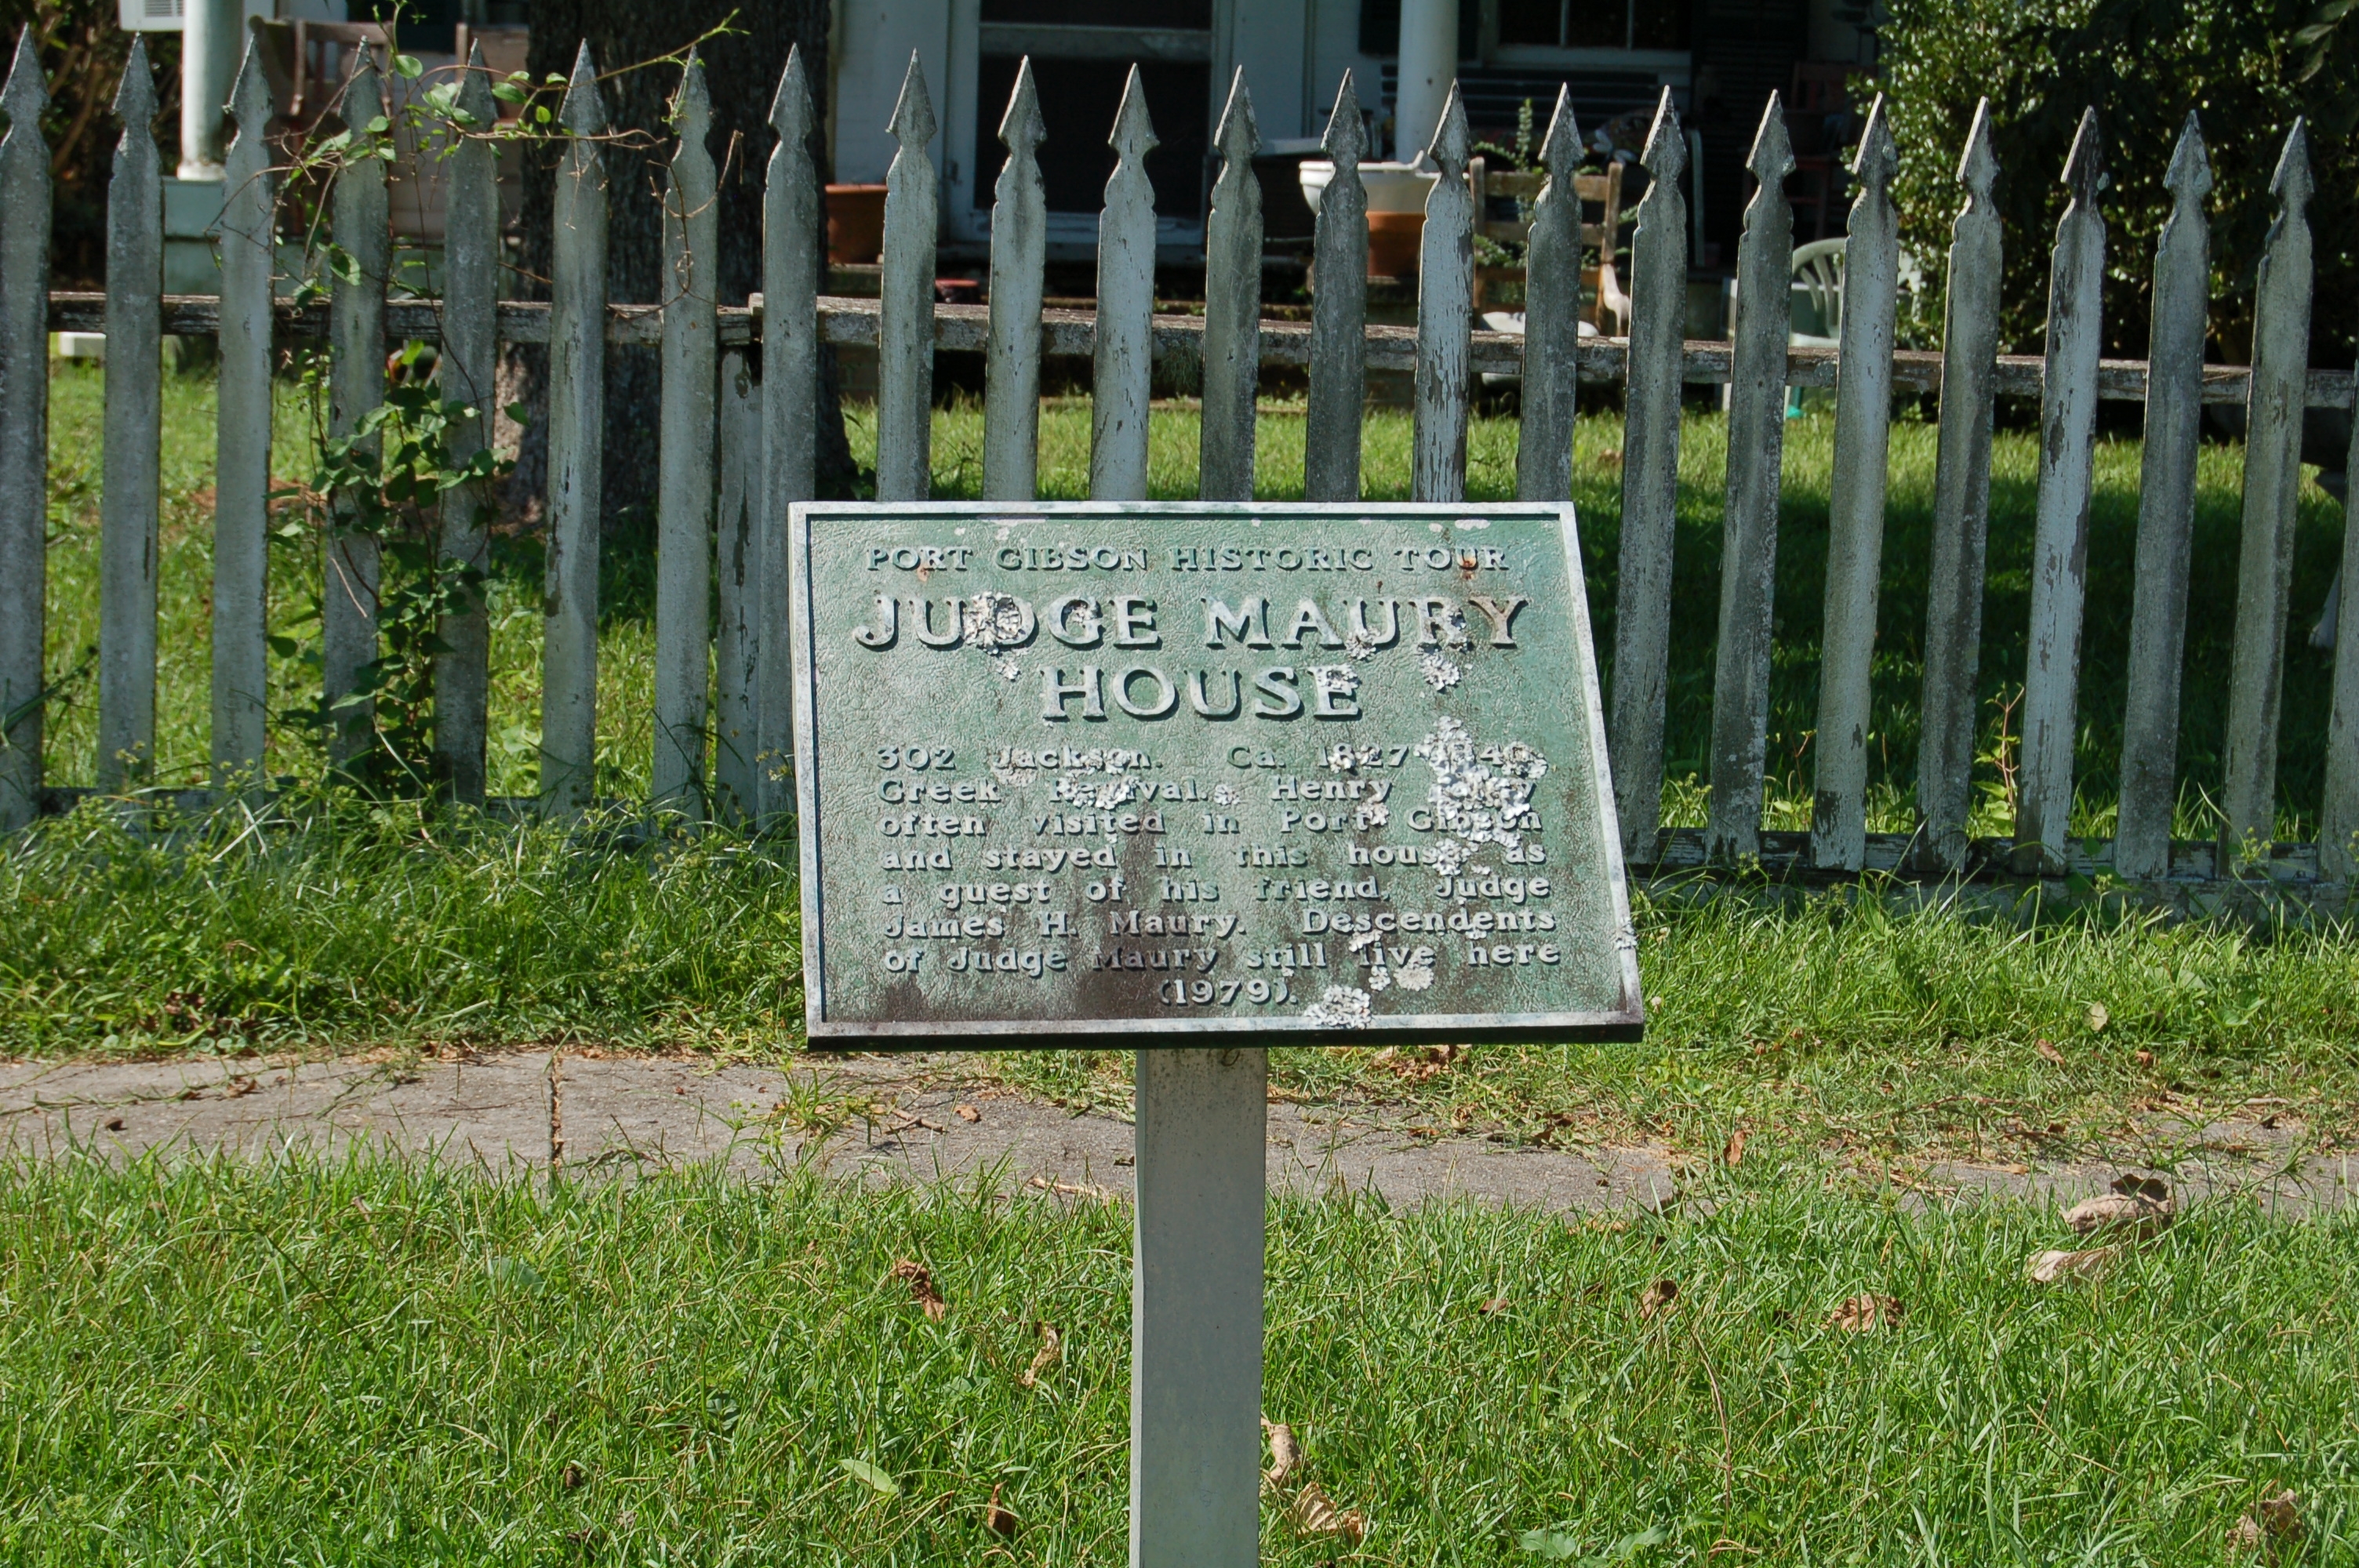 Judge Maury House Marker